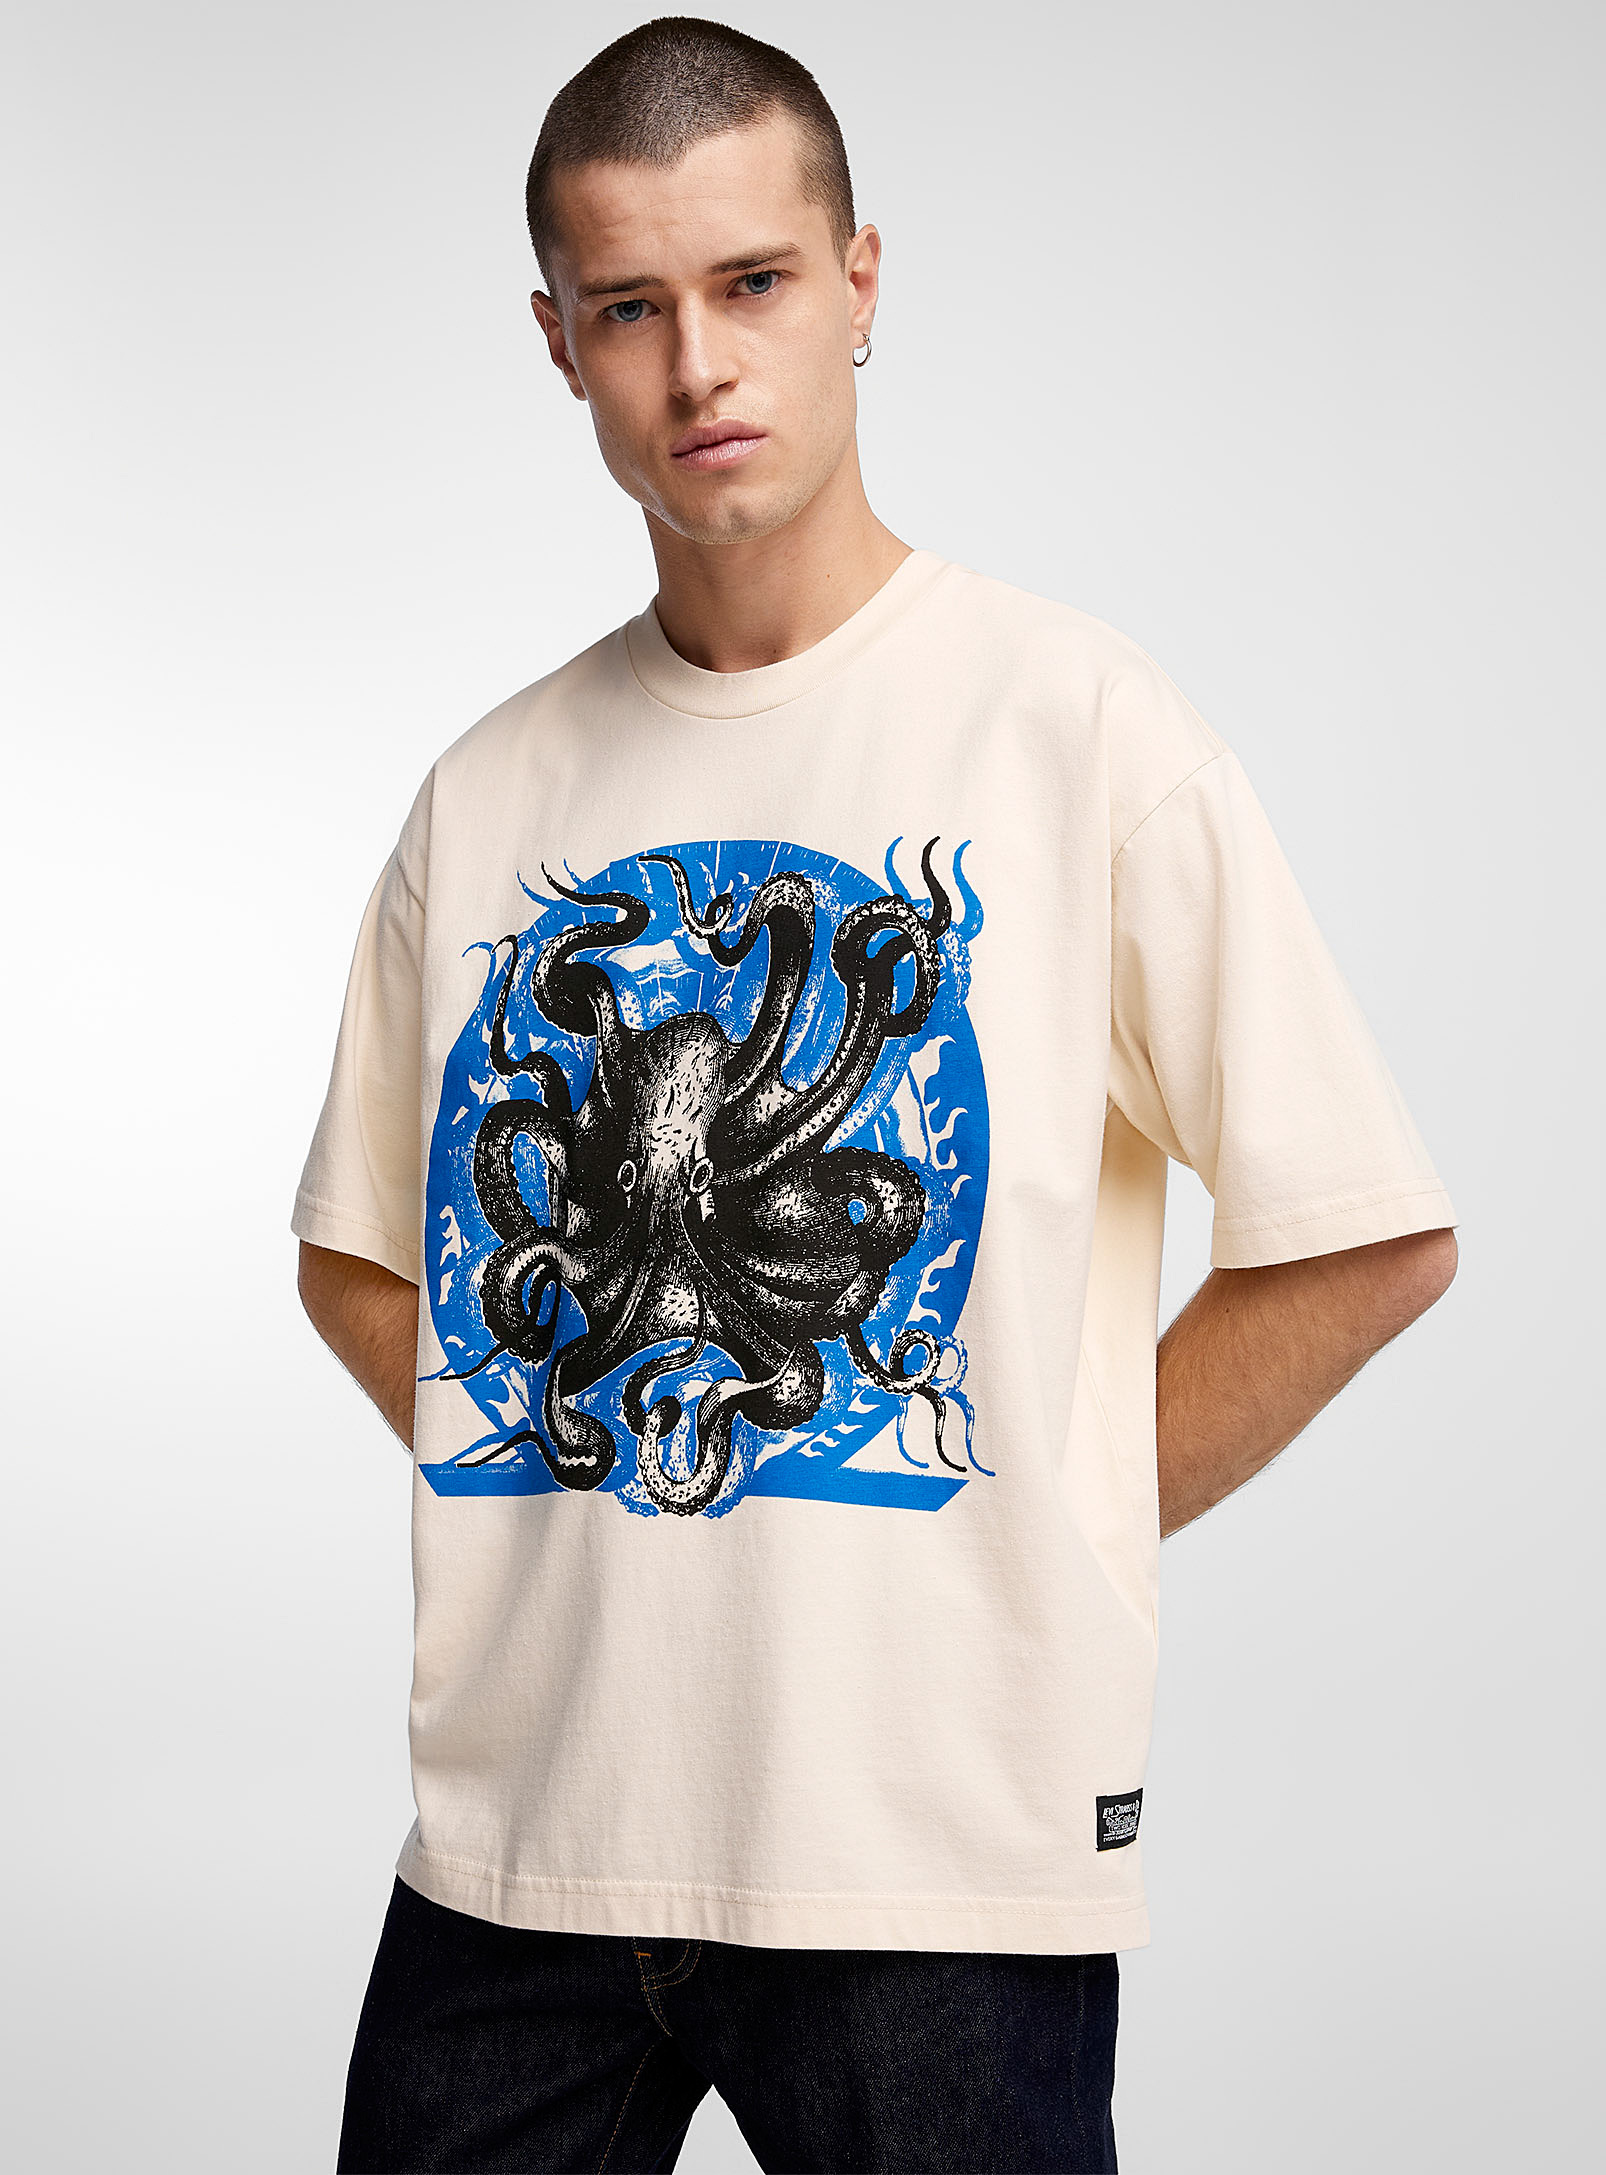 Levi's - Men's Kraken T-shirt